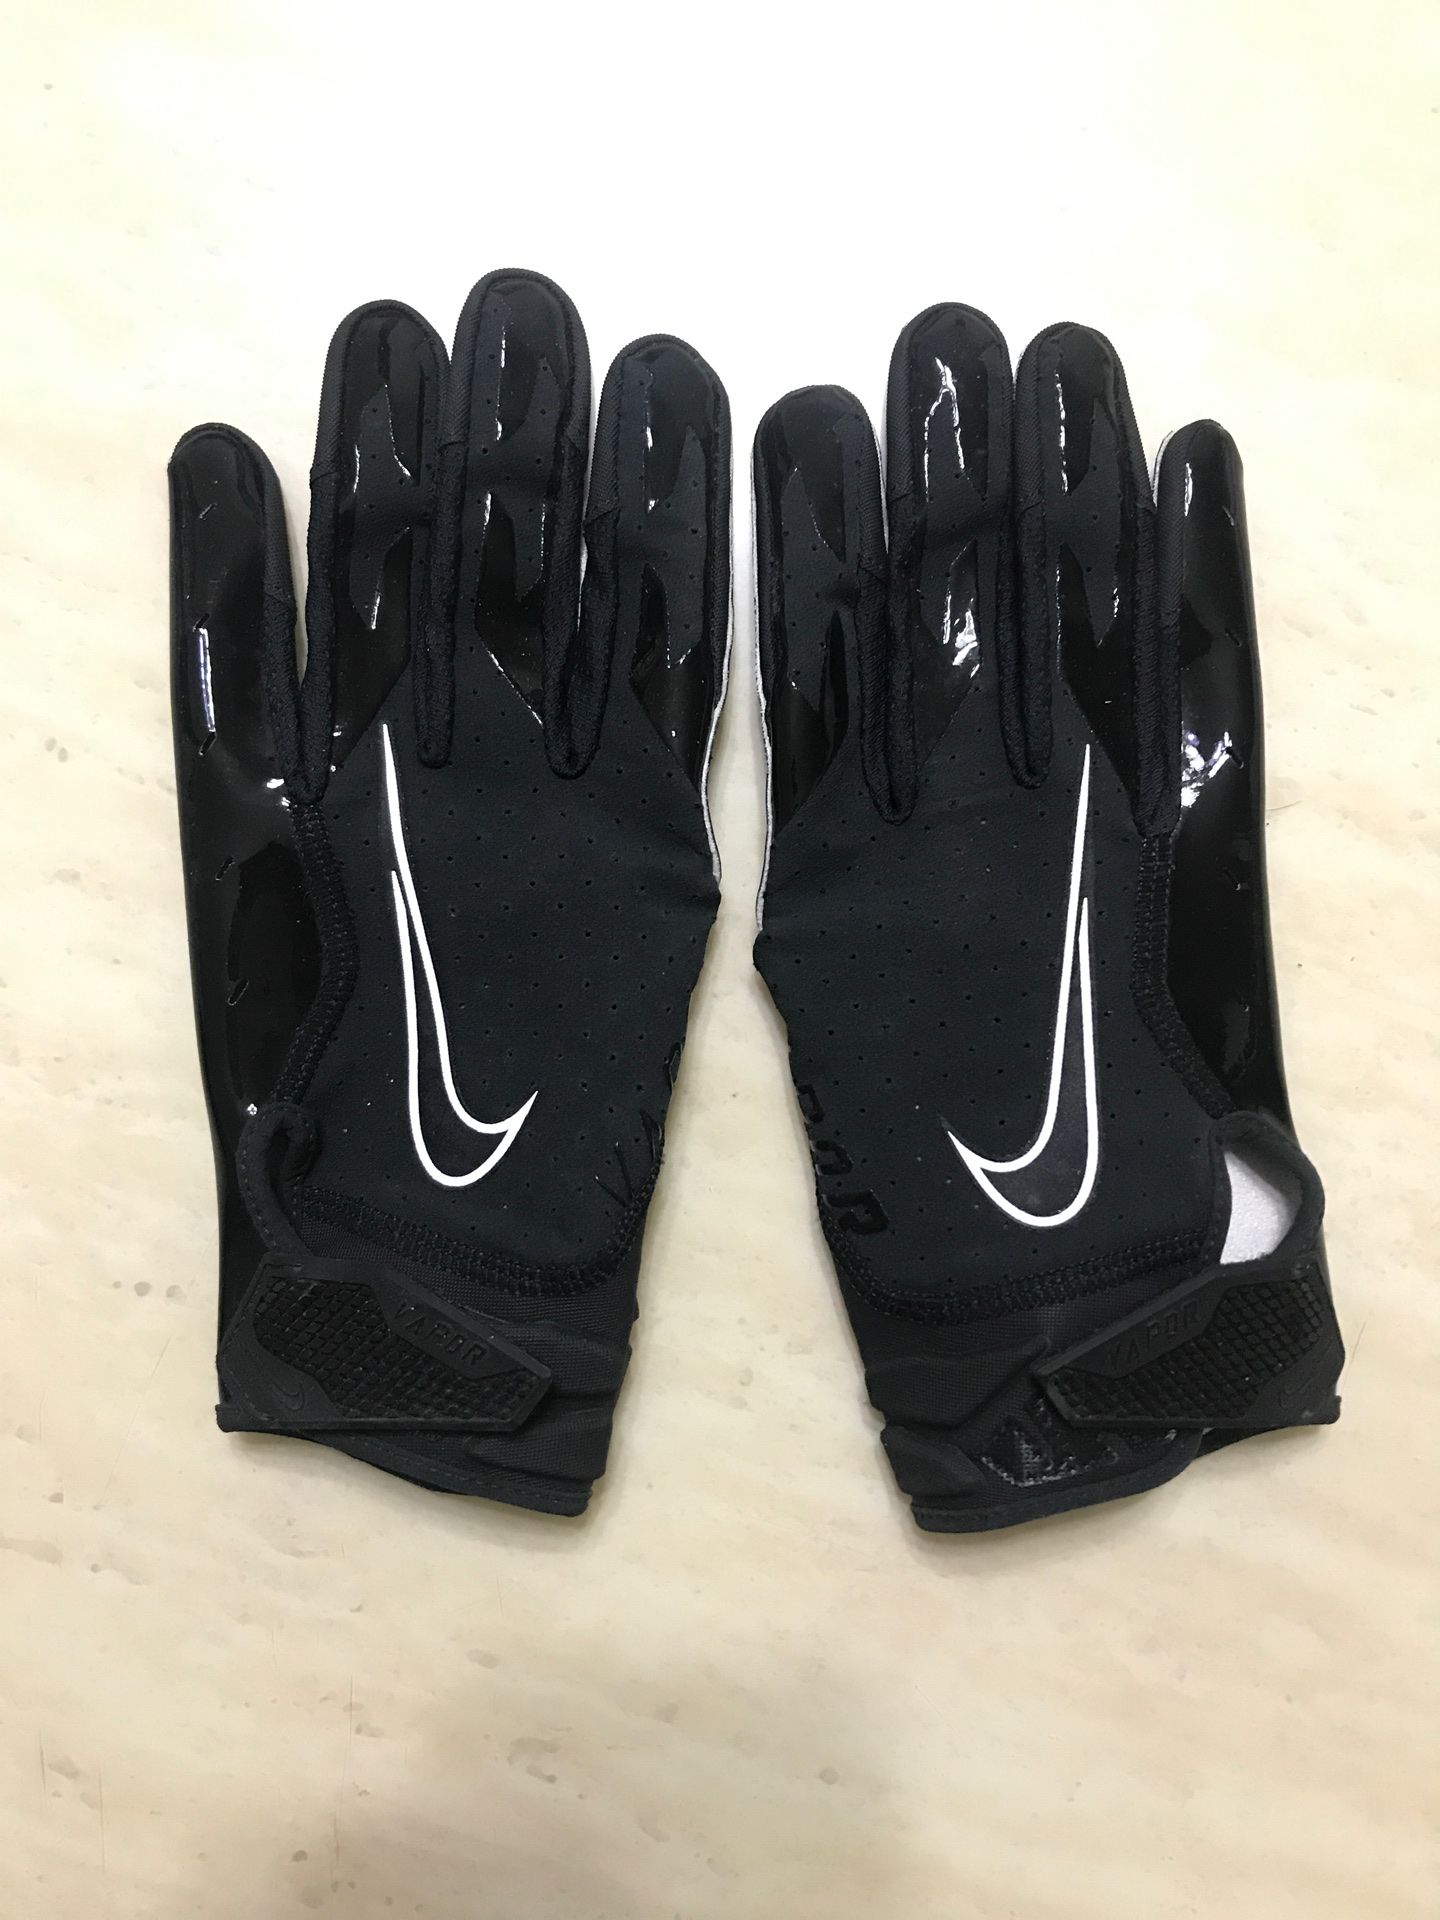 Nike vapor jet 6.0 football gloves